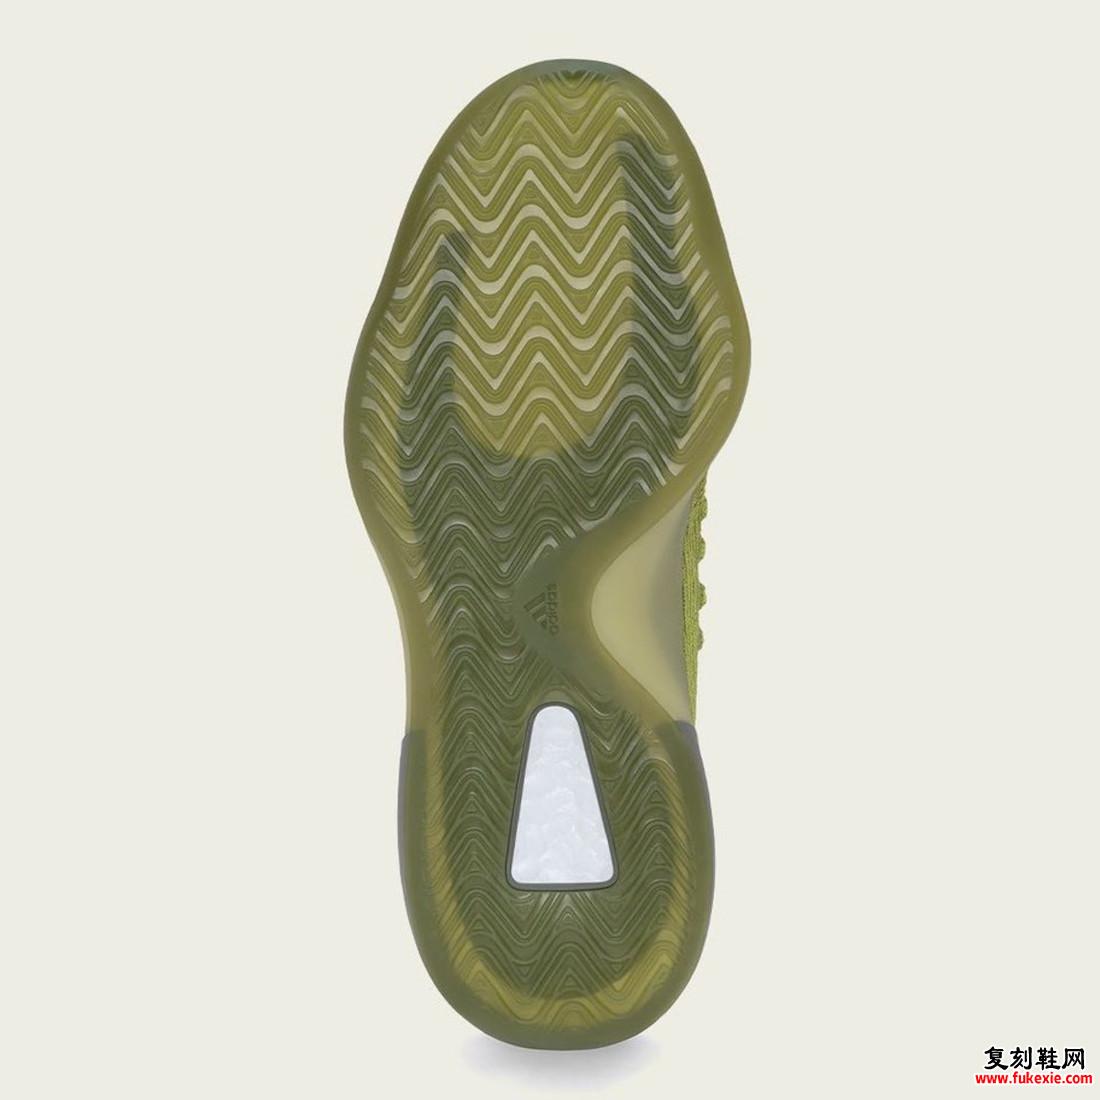 adidas Yeezy BSKTBL Knit Energy Glow HR0811 发布日期